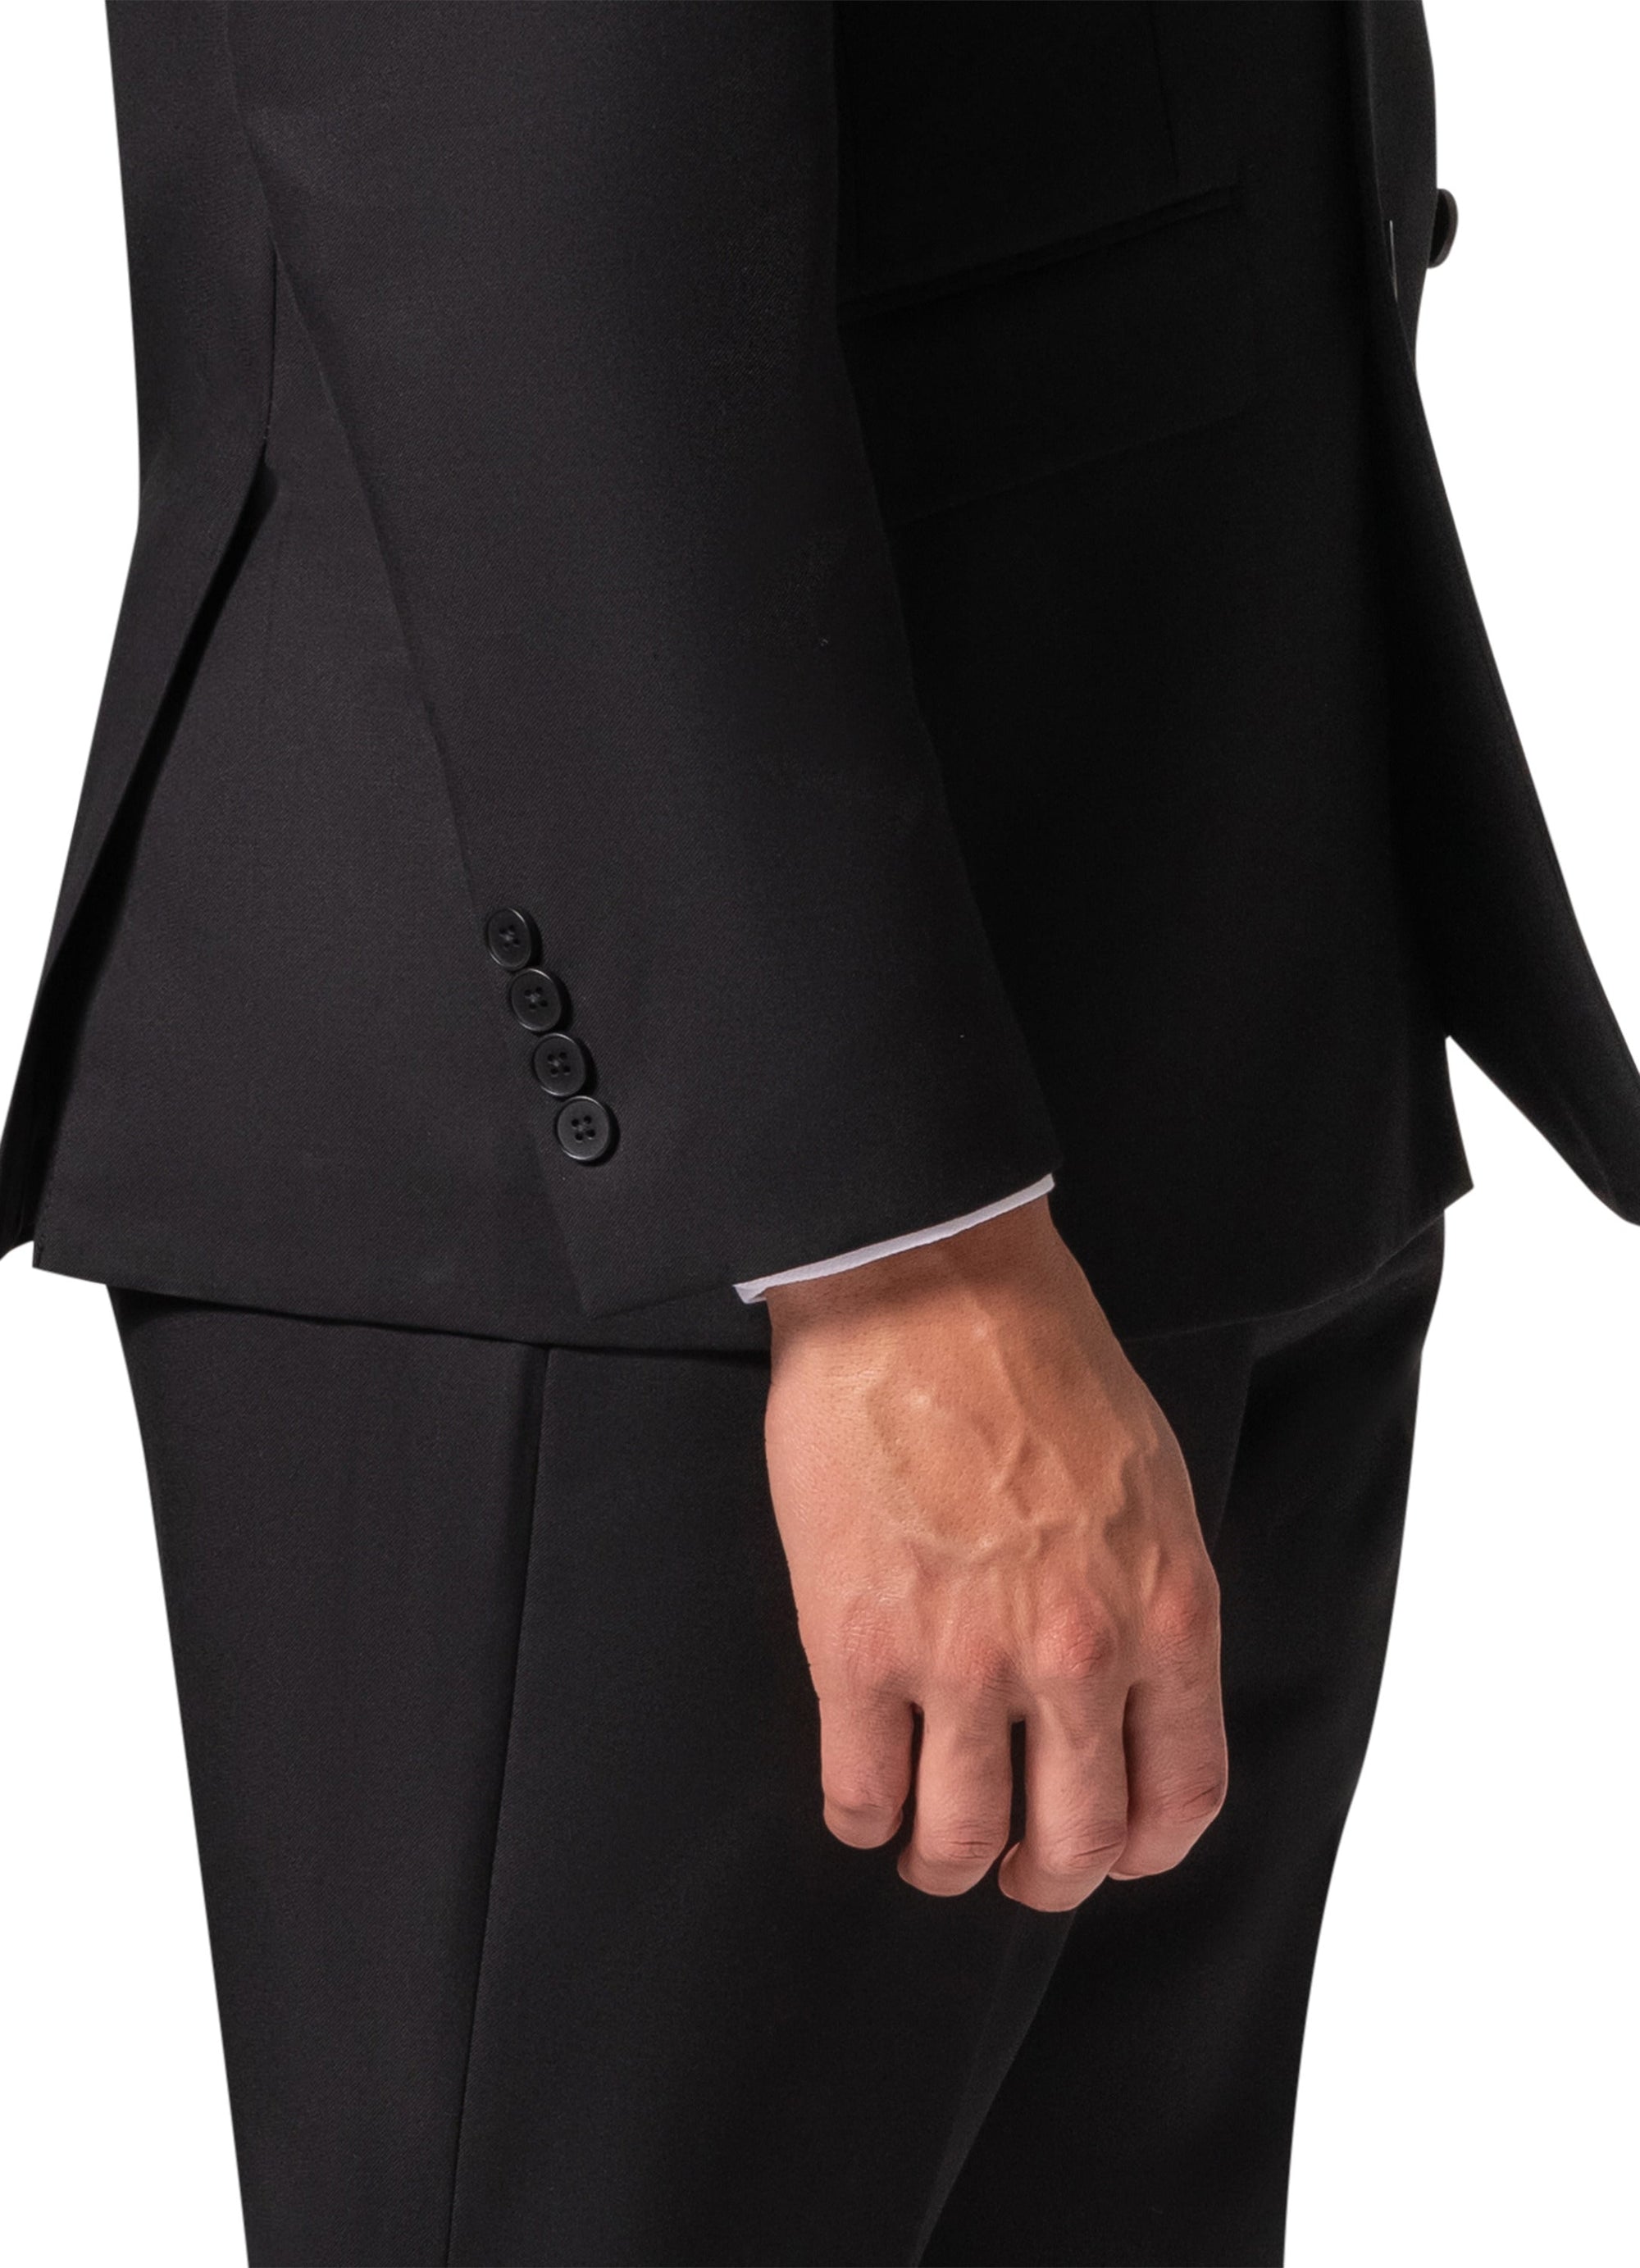 Berragamo A6732 D/B Modern Fit Suit - Black